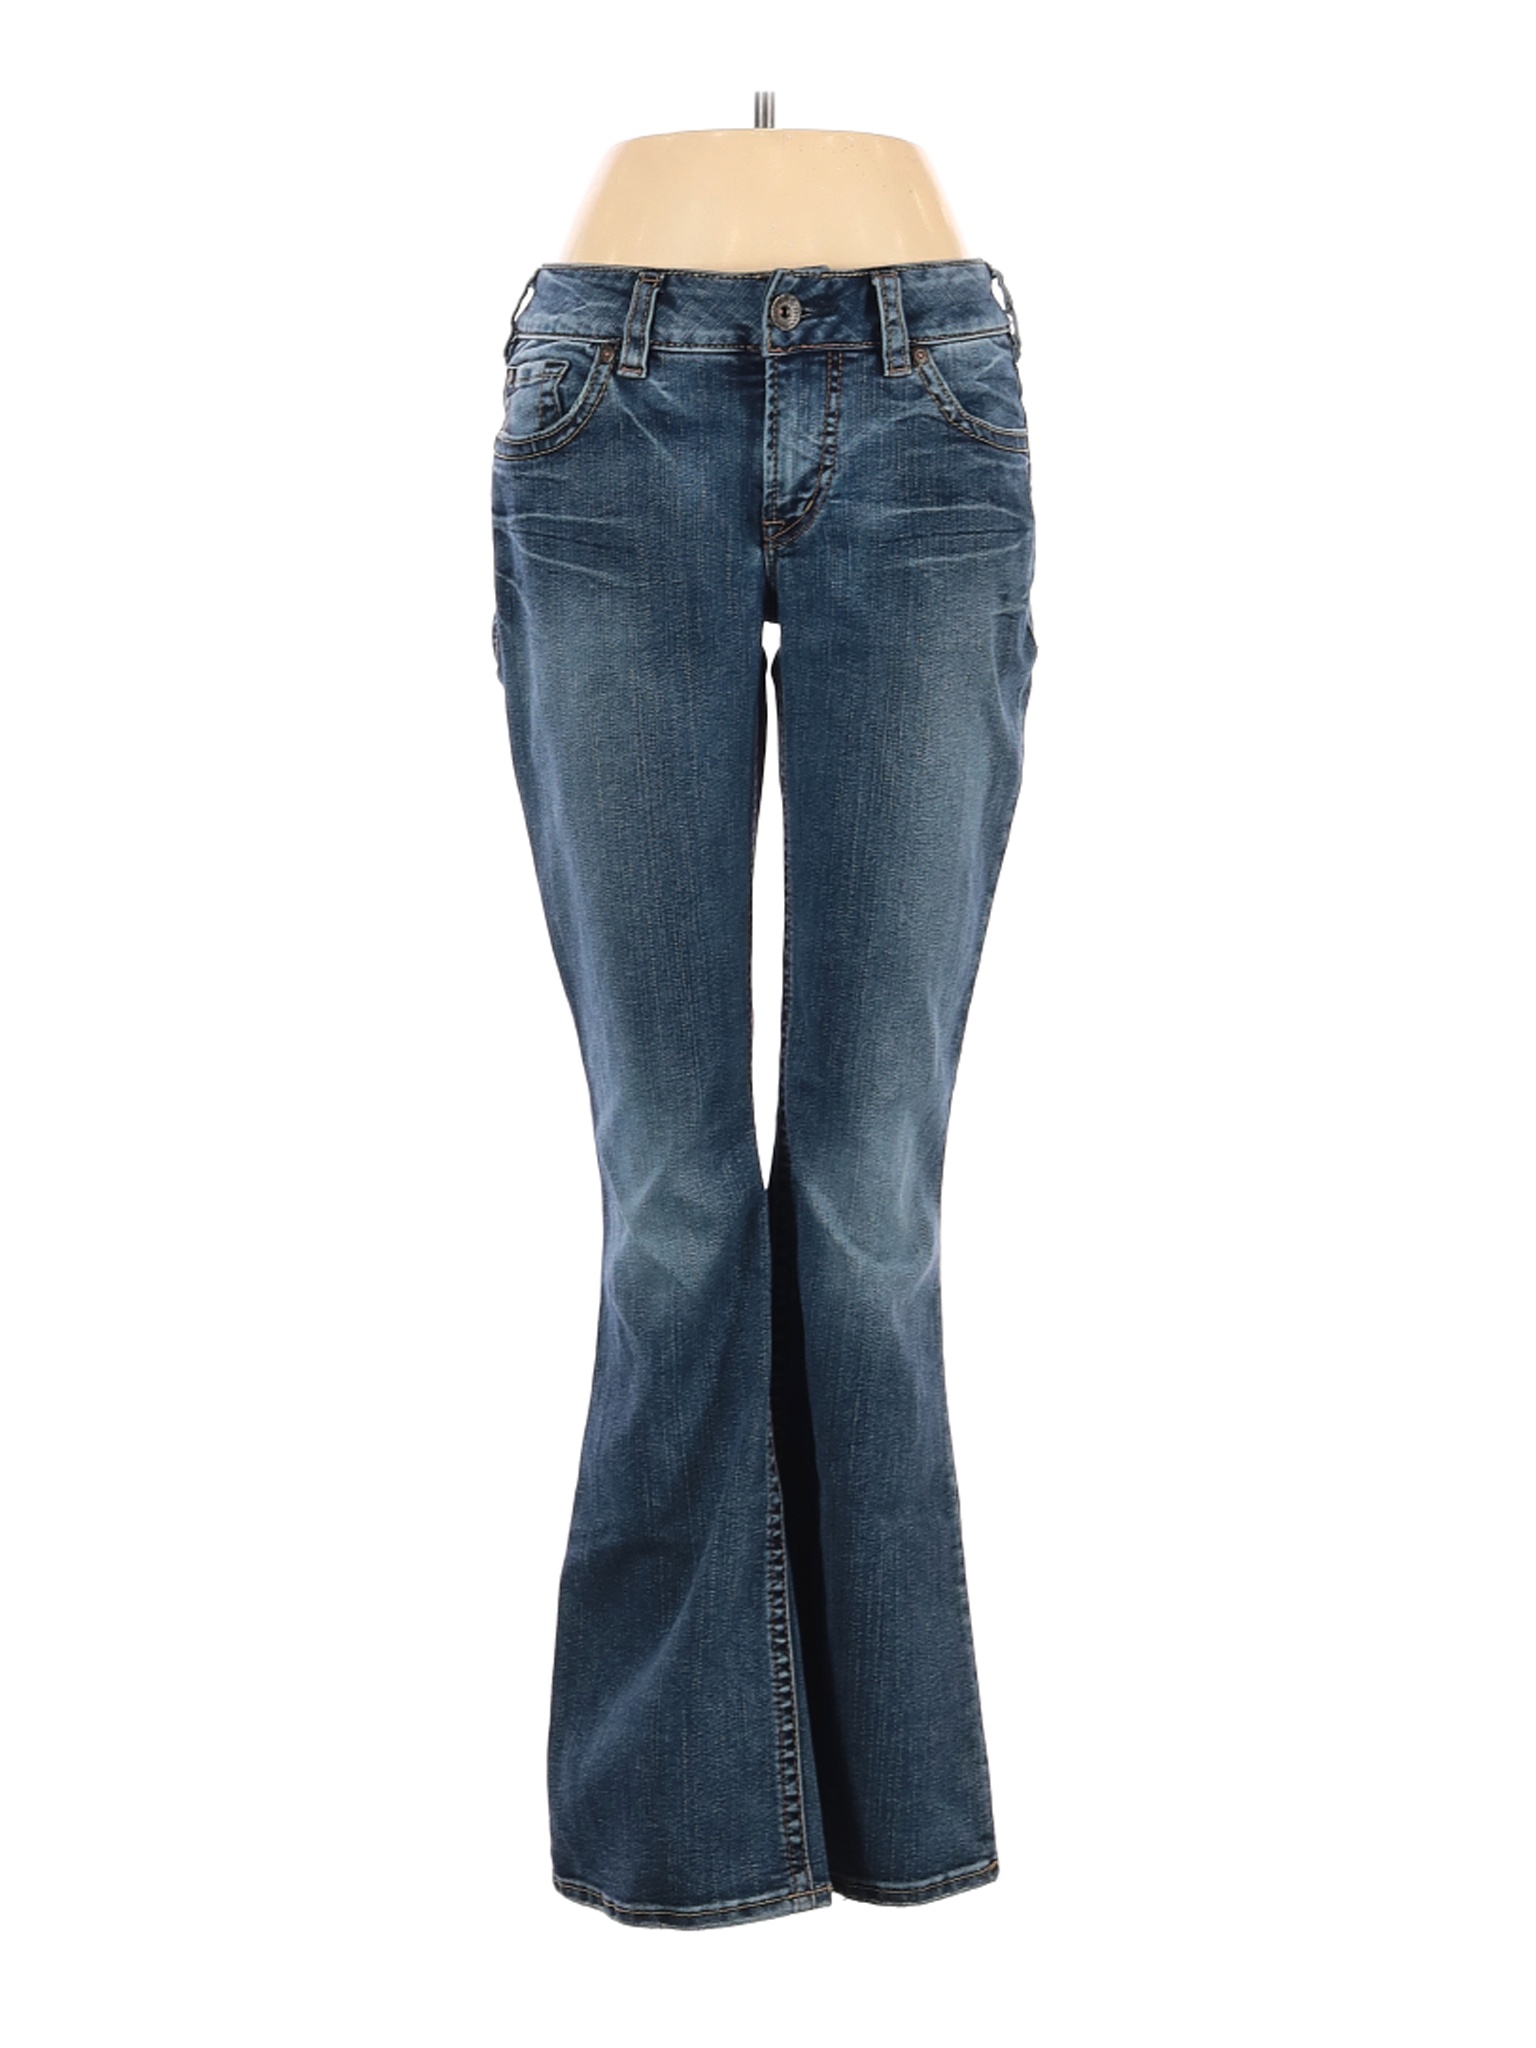 Silver Jeans Co. Women Blue Jeans 29W | eBay